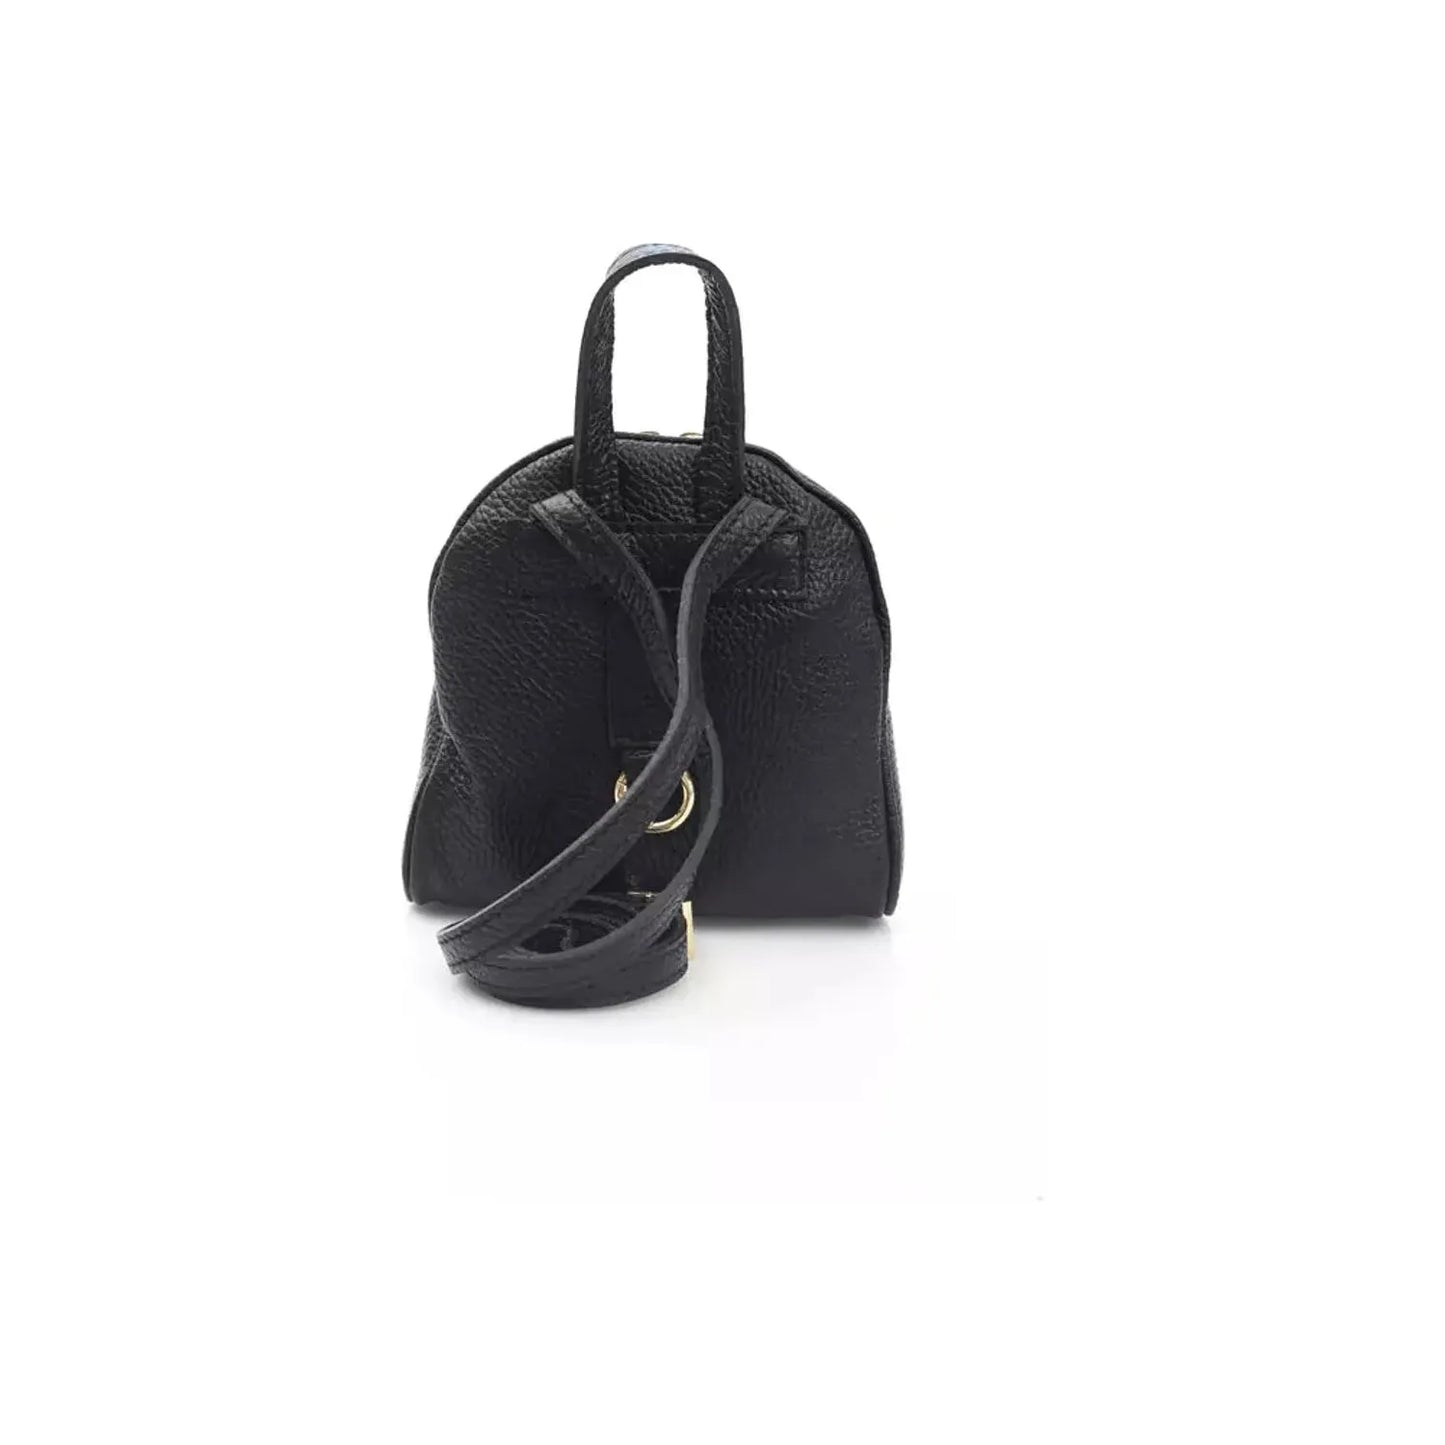 La Martina Elegant Leather Messenger Bag with Logo Detailing black-messenger-bag product-22973-1324290636-19-72dfdf2a-450.webp